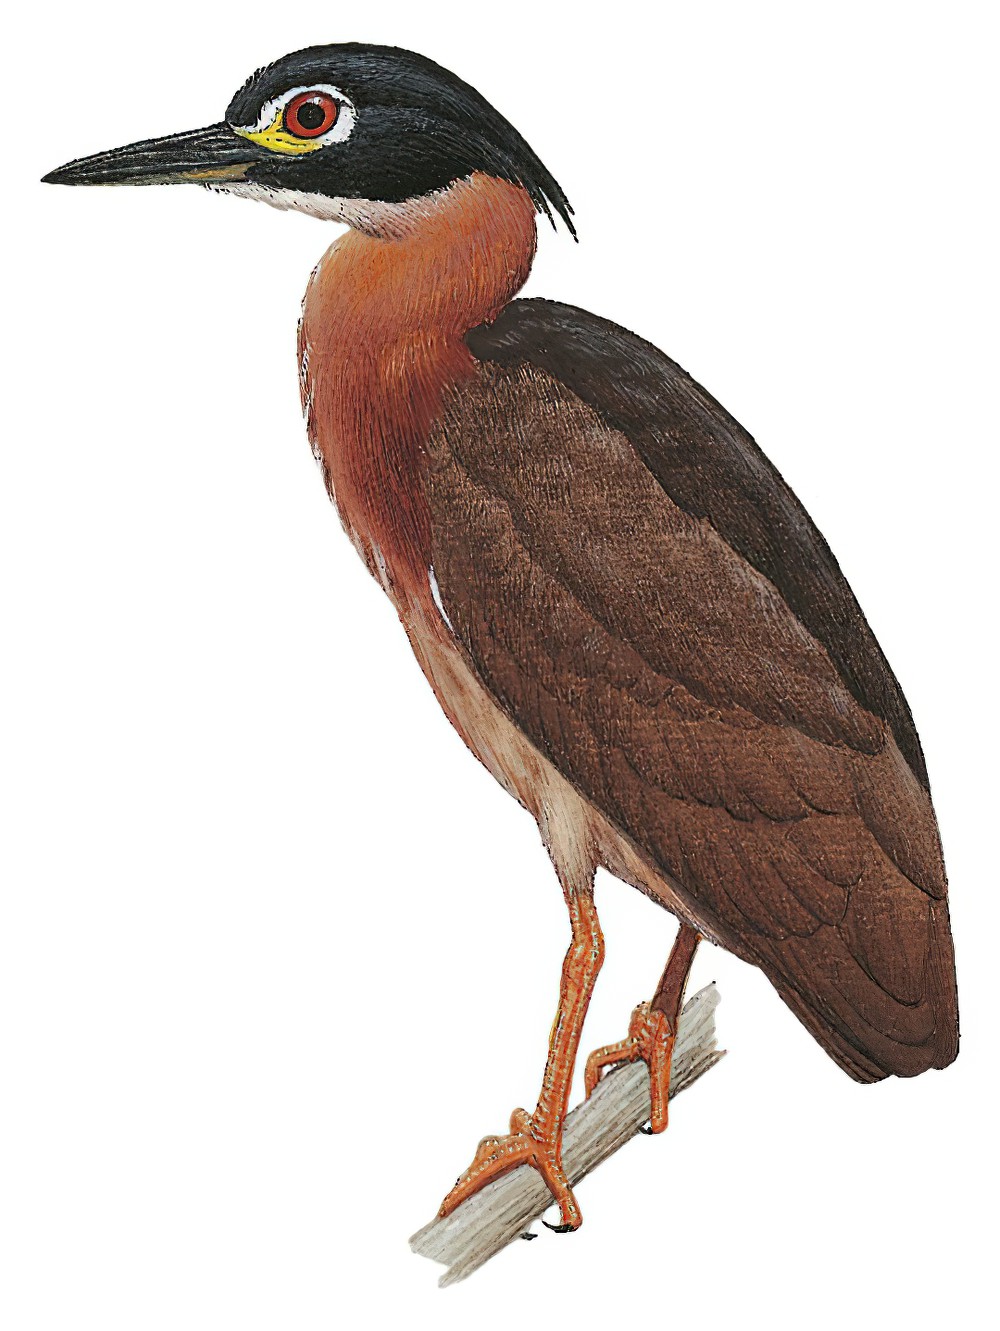 White-backed Night-Heron / Gorsachius leuconotus